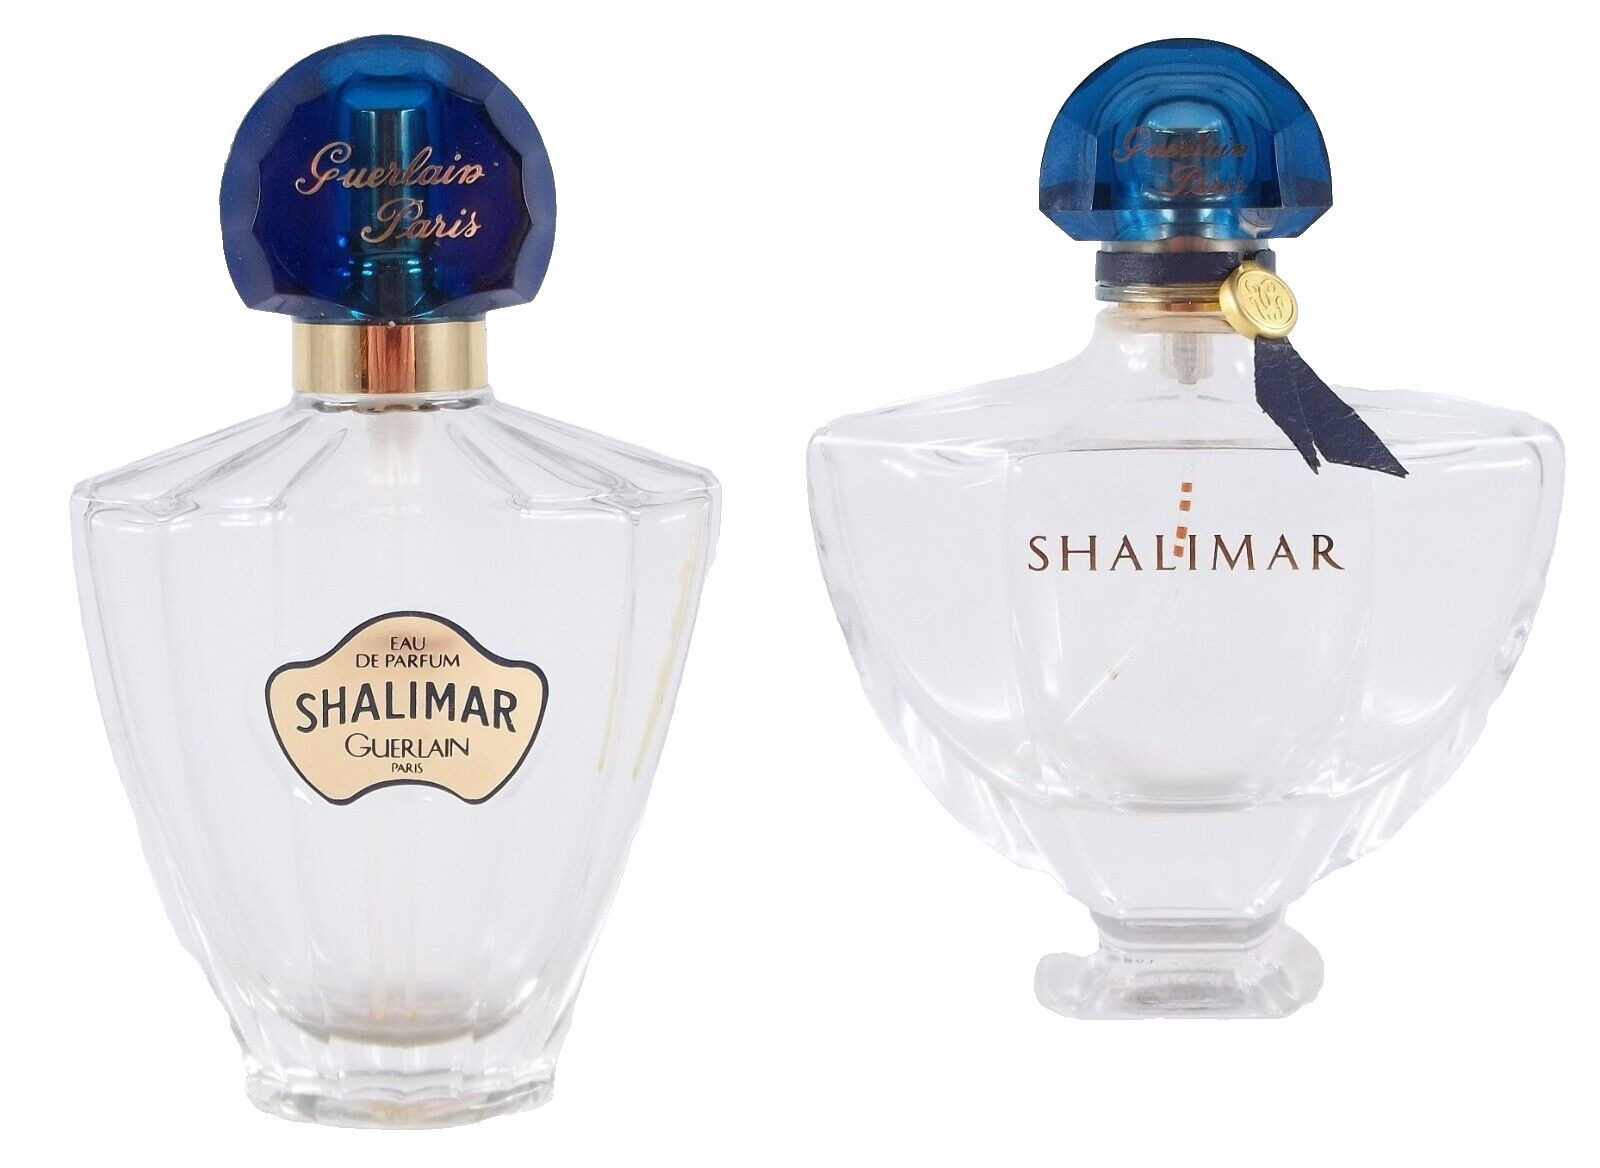 Pair Eau de Parfum Shalimar Paris Glass Scent Bottle With Labels, No Contents